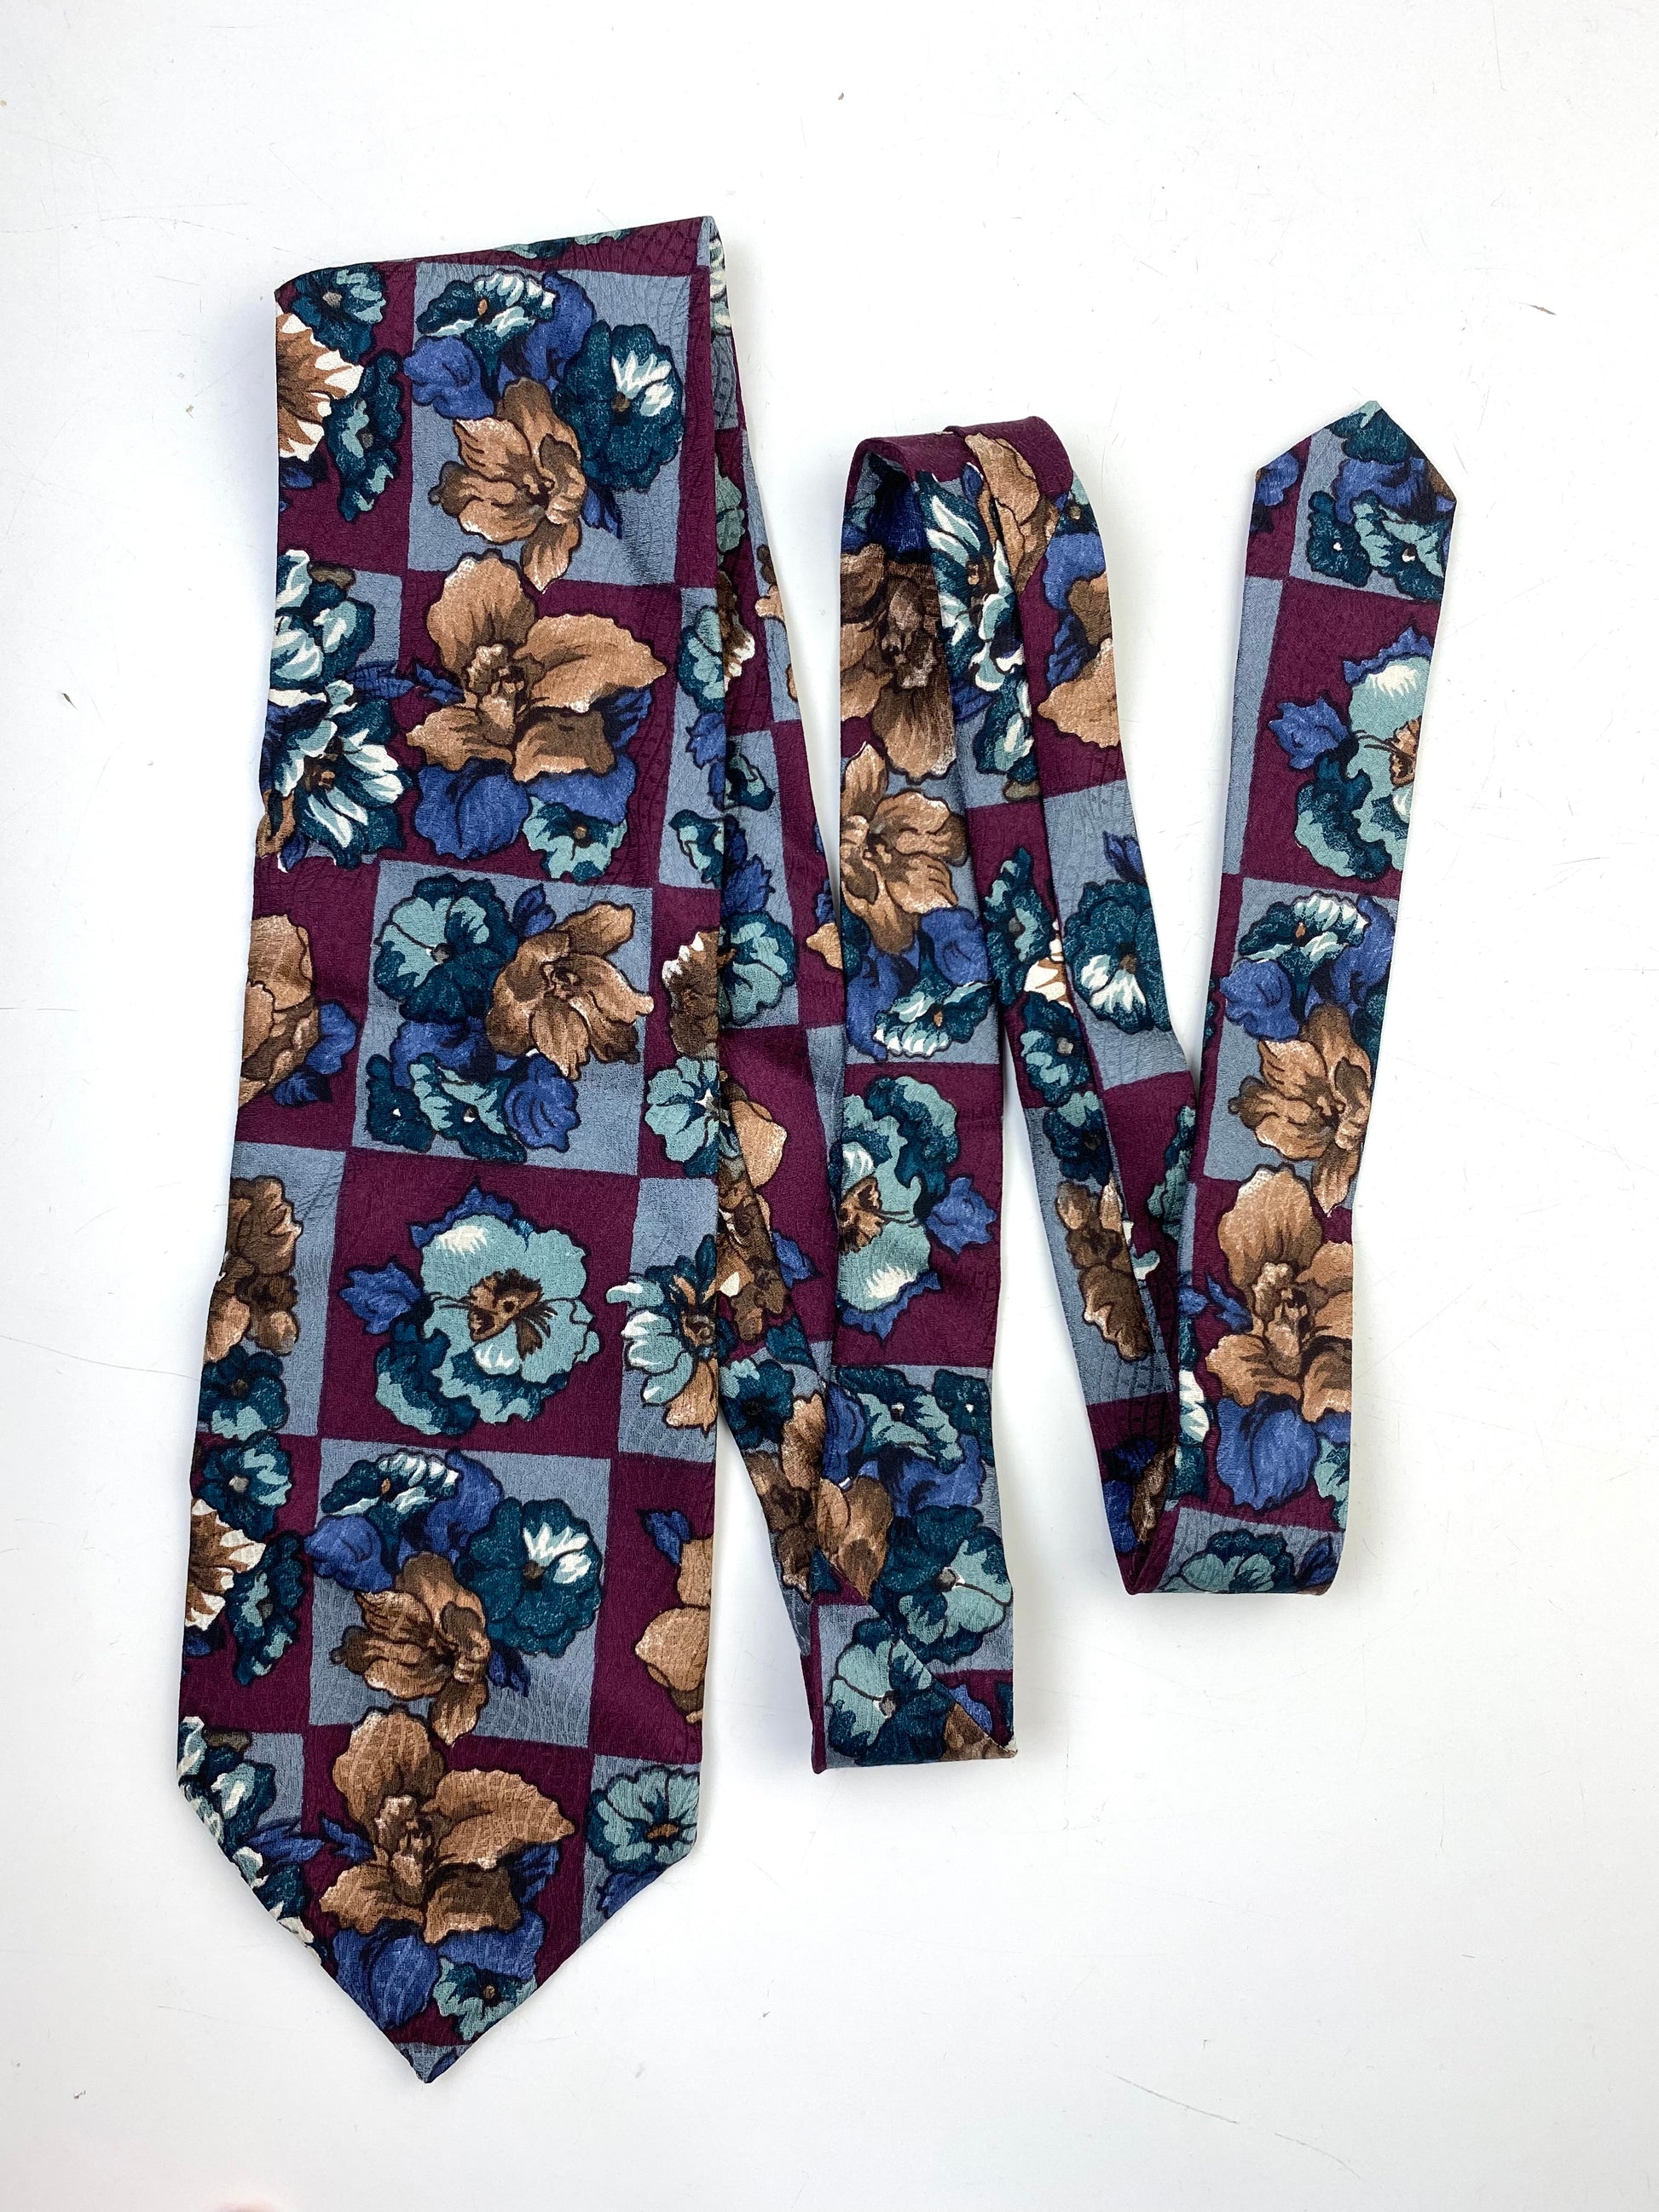 90s Deadstock Silk Necktie, Vintage Plum/ Blue Floral Pattern Tie, NOS